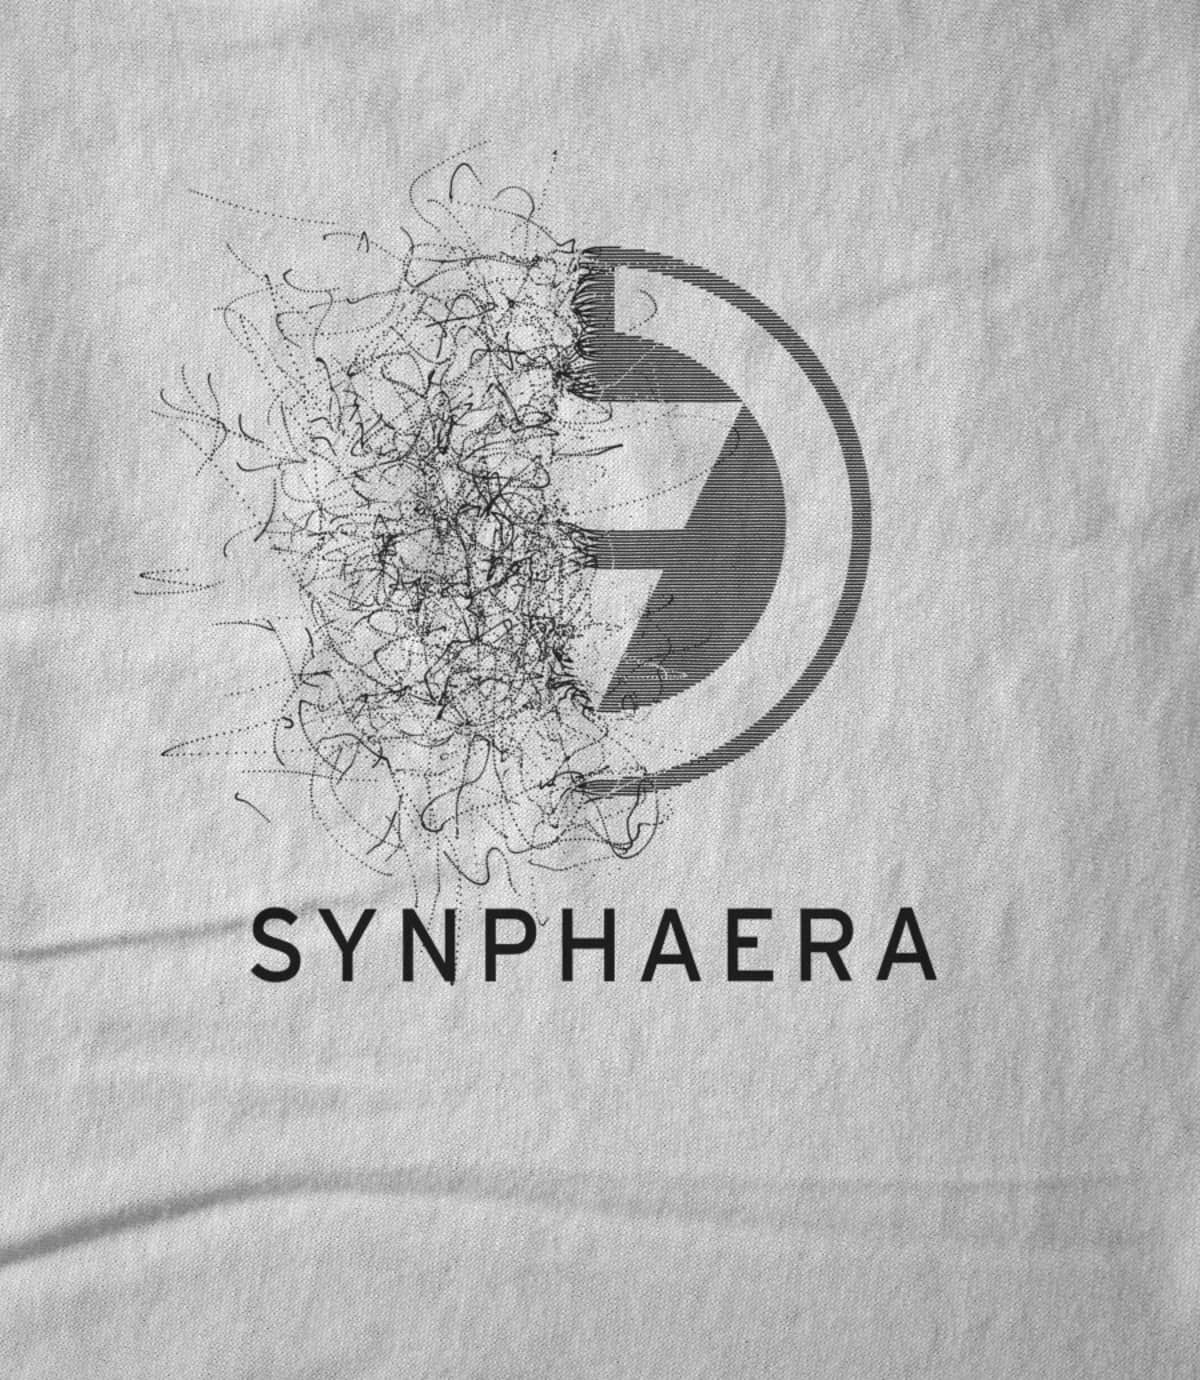 Synphaera